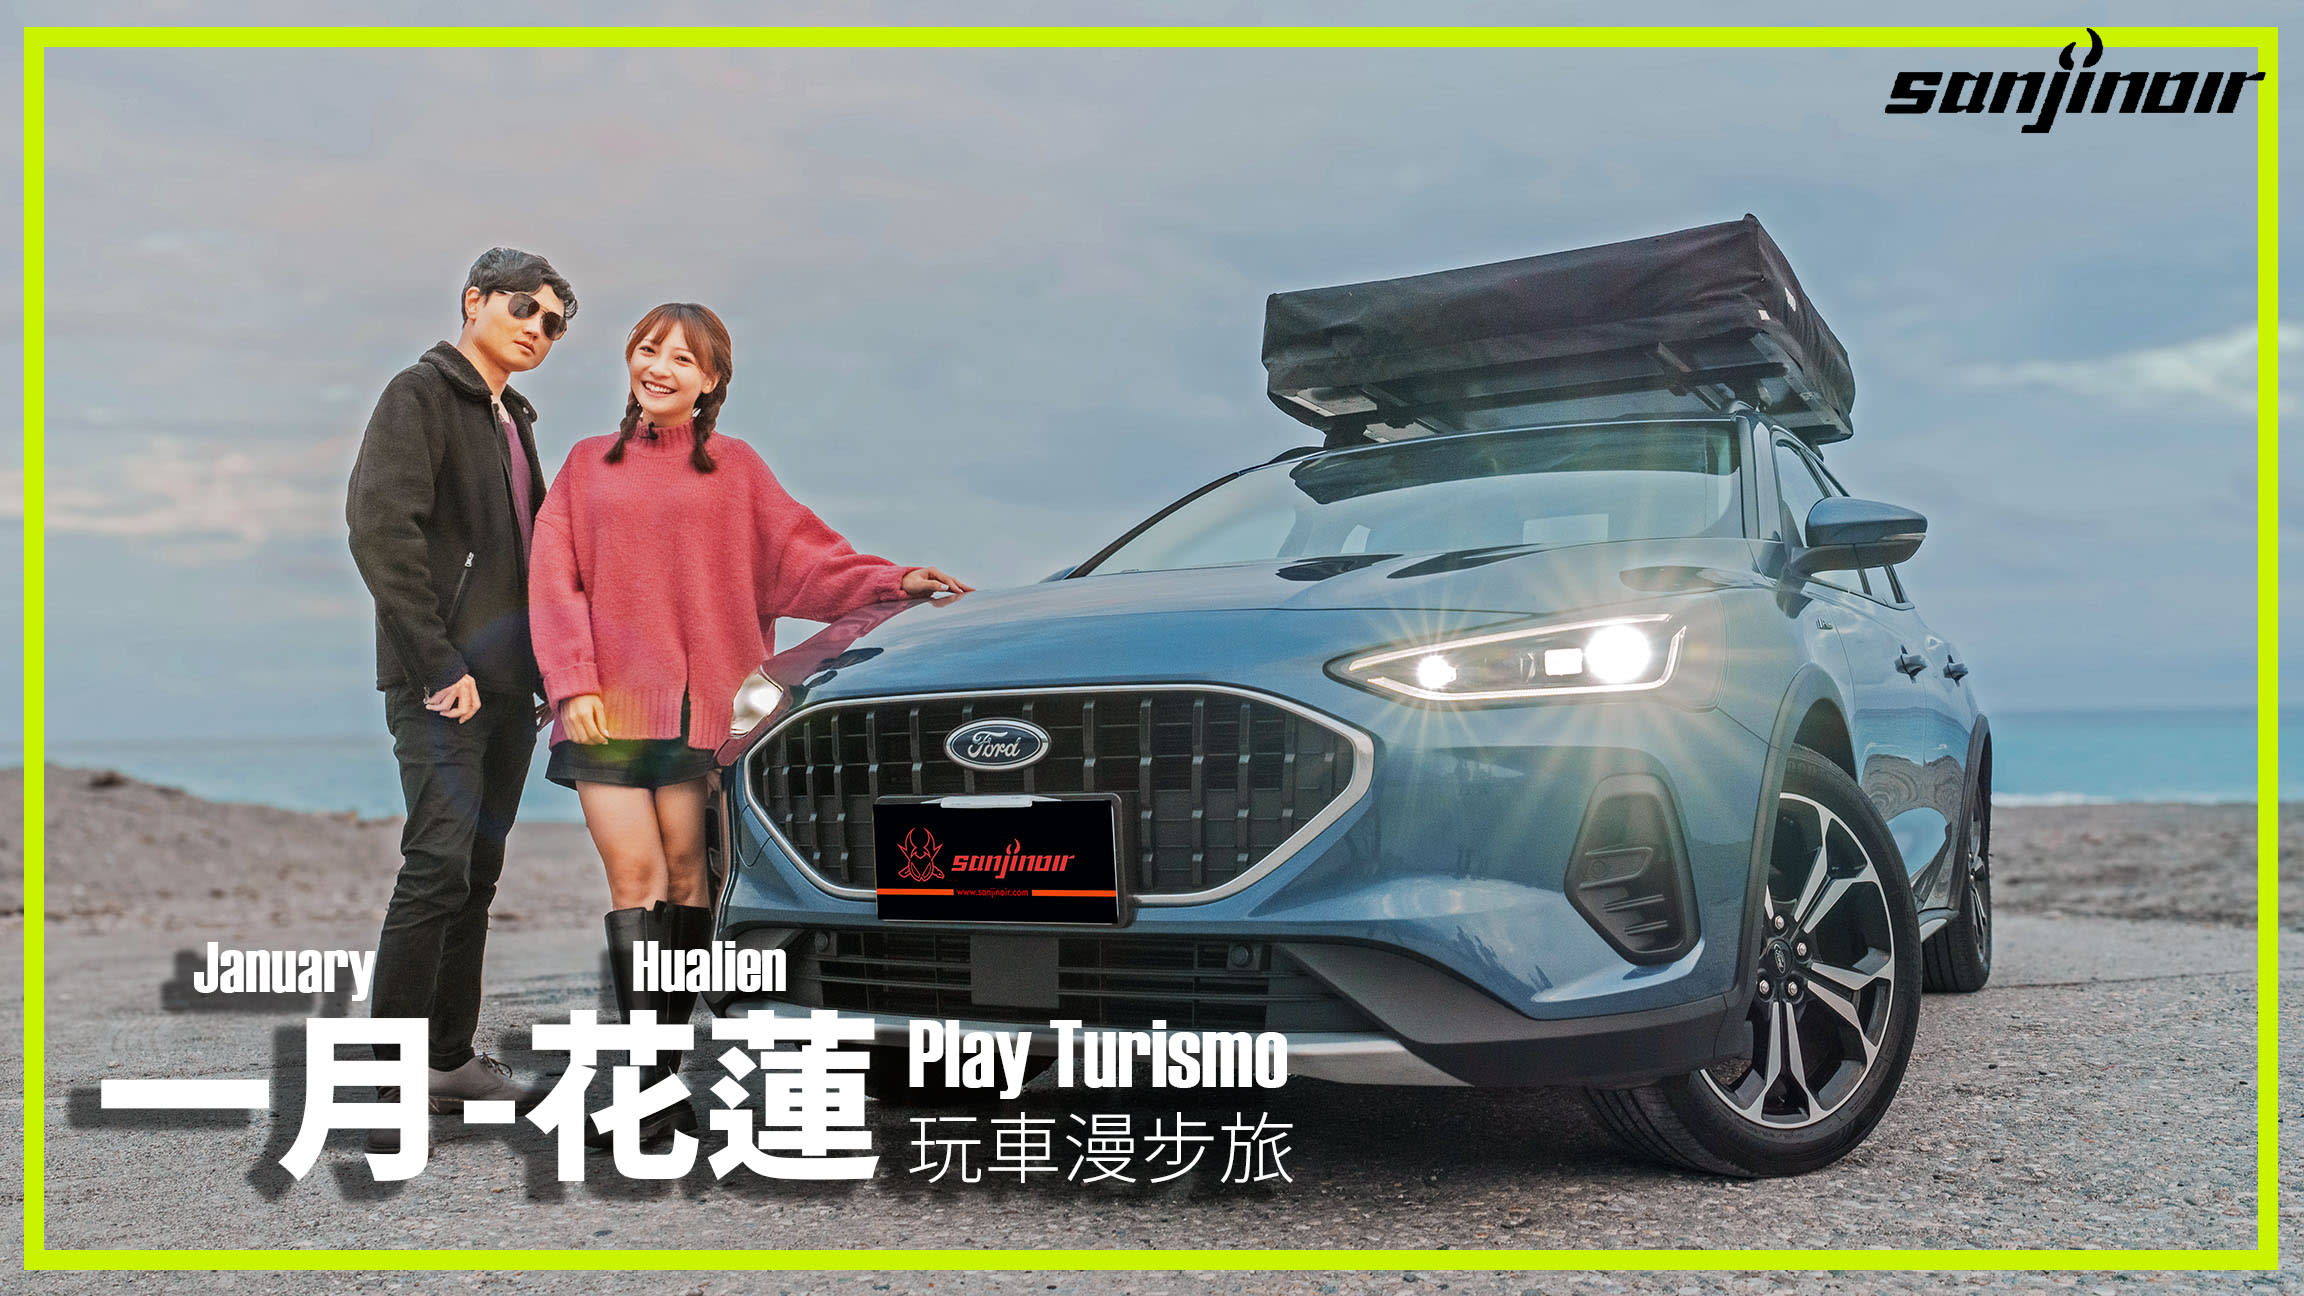 一月 - 花蓮，見識Ford Focus Active Wagon上山下海展現跨界身軀（上）｜Play Turismo 玩車漫步旅